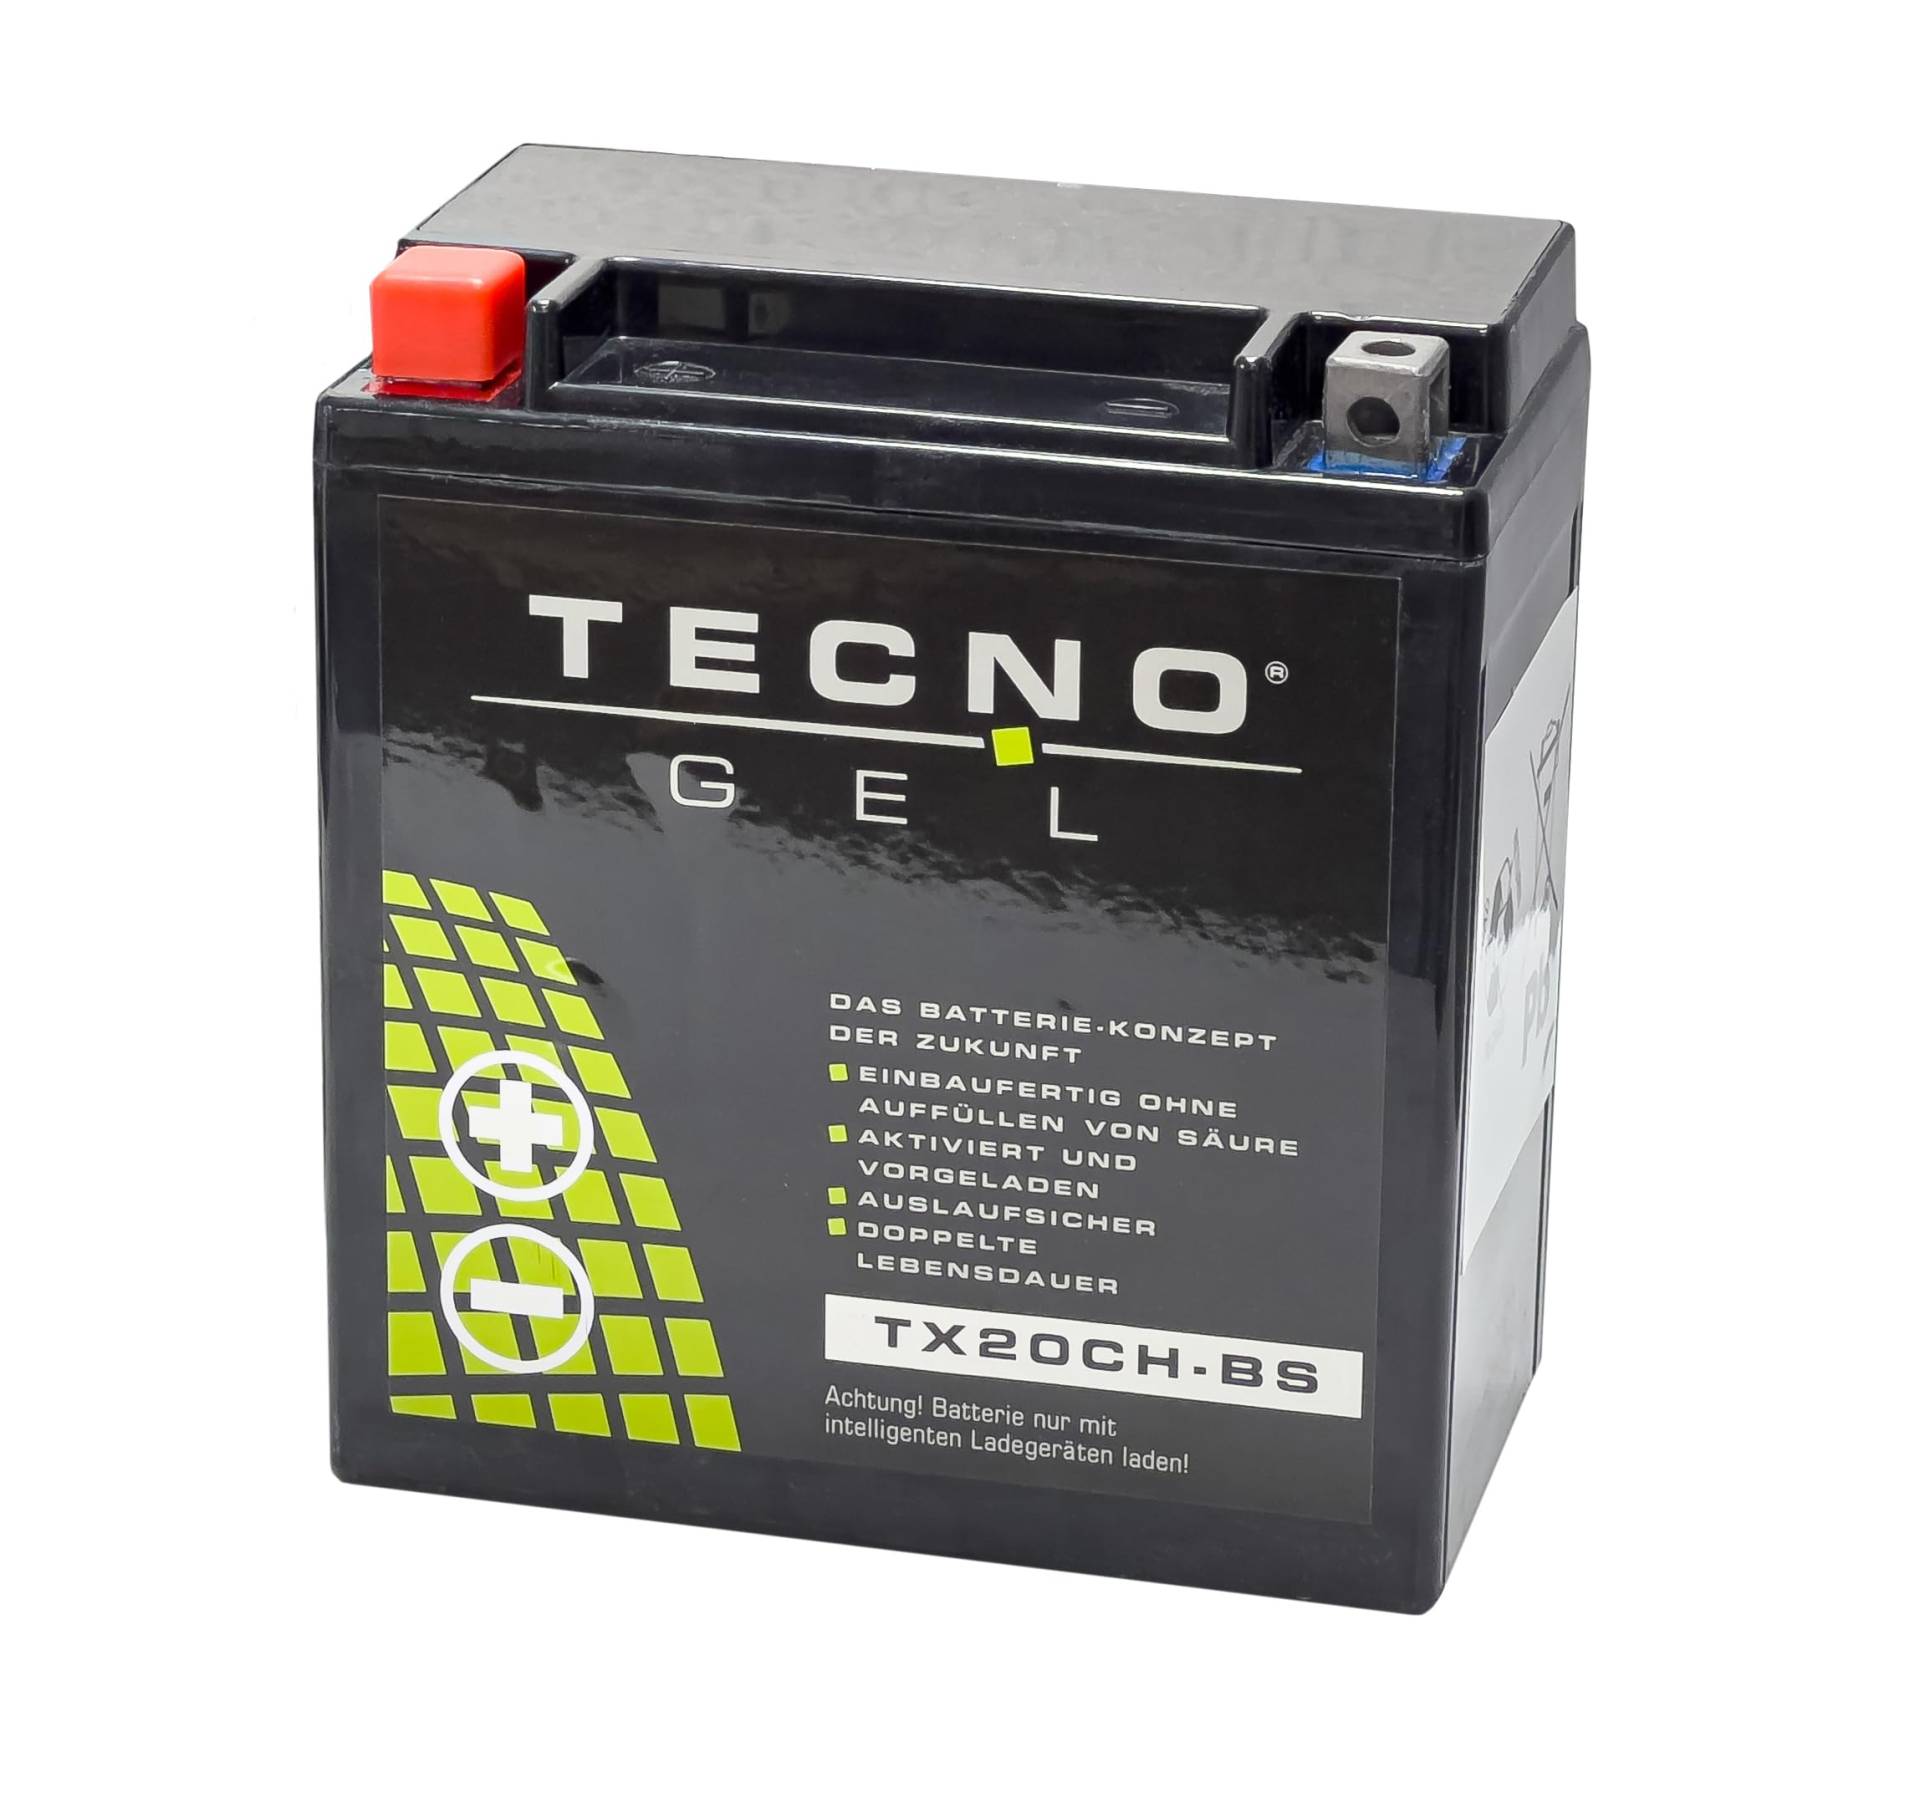 TECNO-GEL Motorrad-Batterie für YTX20CH-BS für KAWASAKI VN 1500 Classic, Tourer, Drifter, Mean Streak 1999-2004, 12V Gel-Batterie 18AH, 150x87x161 mm von Wirth-Federn